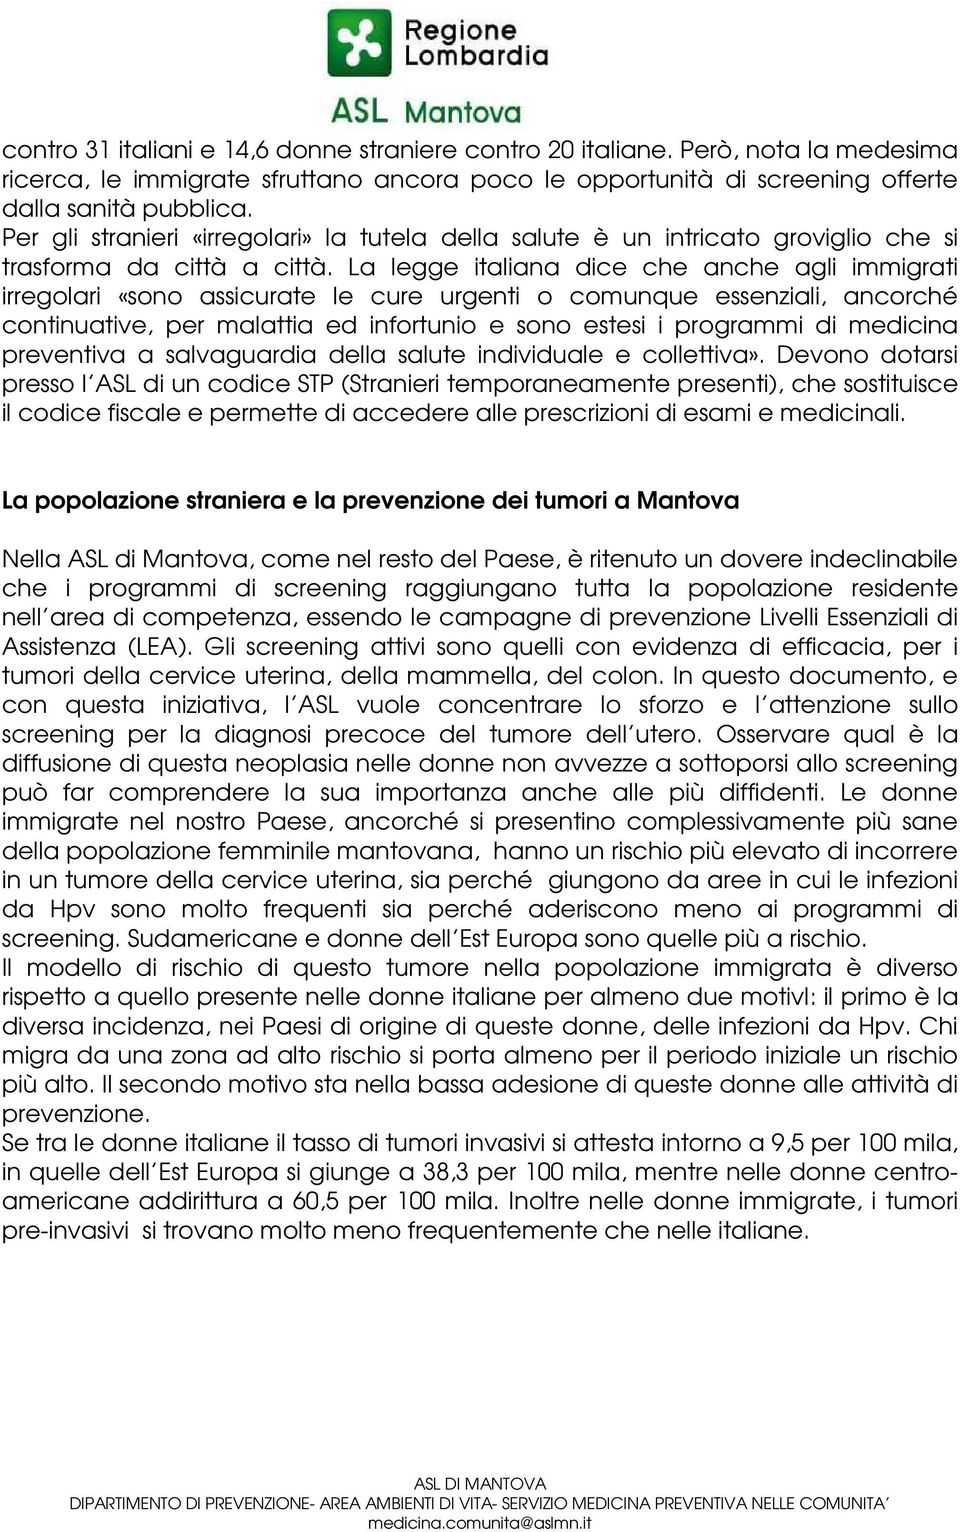 La legge italiana dice che anche agli immigrati irregolari «sono assicurate le cure urgenti o comunque essenziali, ancorché continuative, per malattia ed infortunio e sono estesi i programmi di